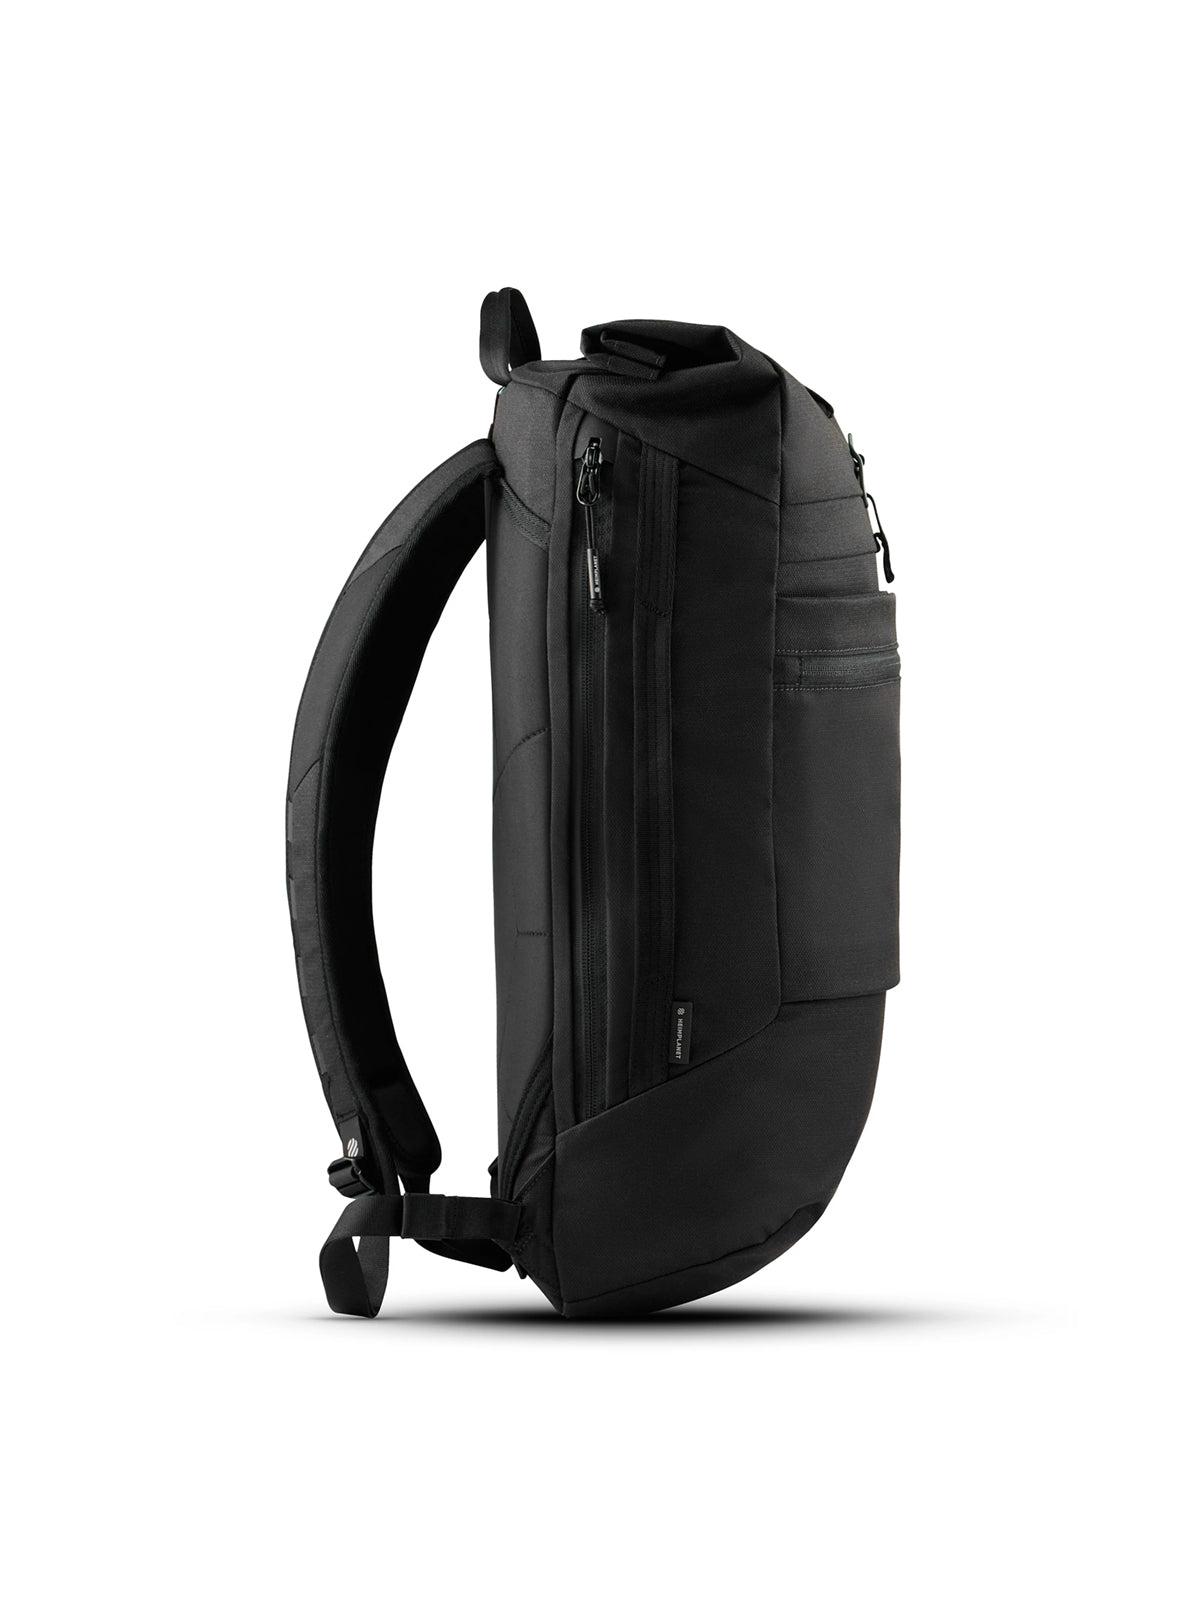 Heimplanet Carry Essentials Commuter Pack